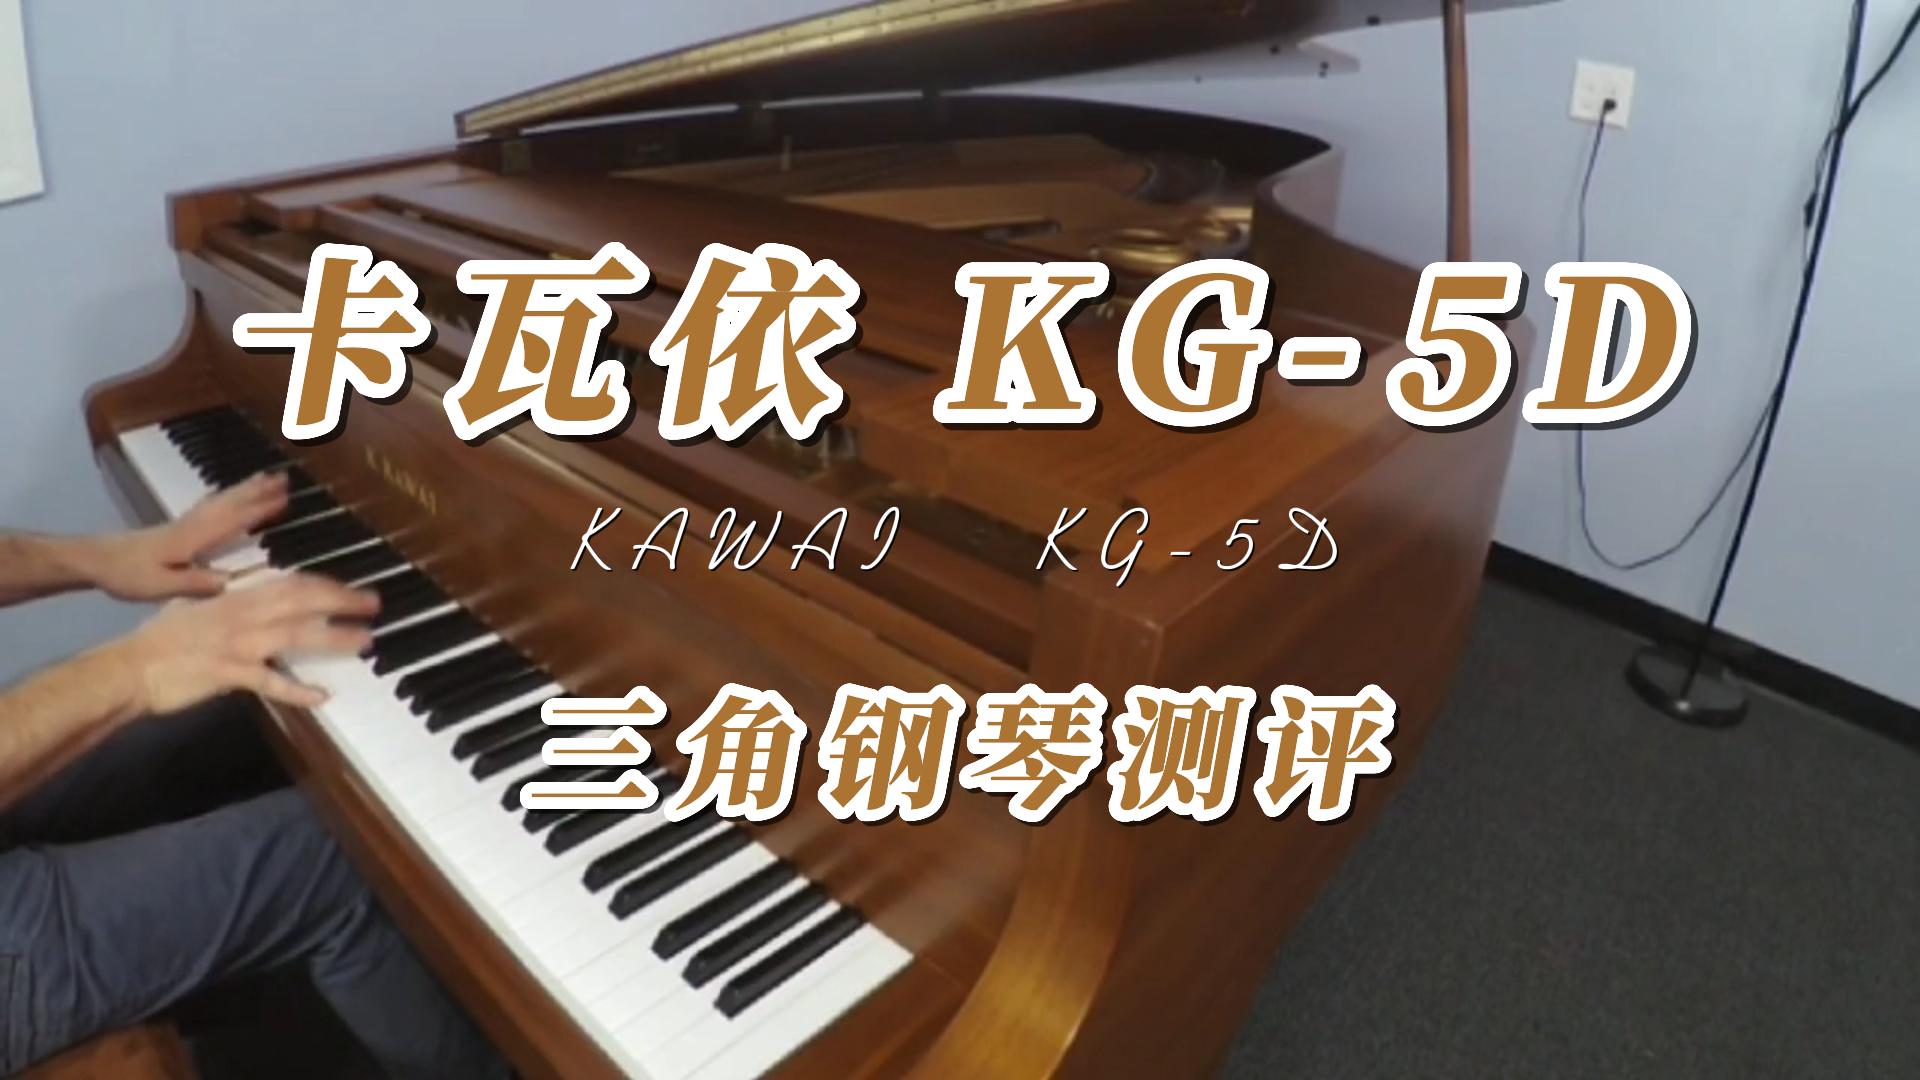 KAWAI 卡瓦依KG-5D三角钢琴弹奏测评_柏通租琴整理